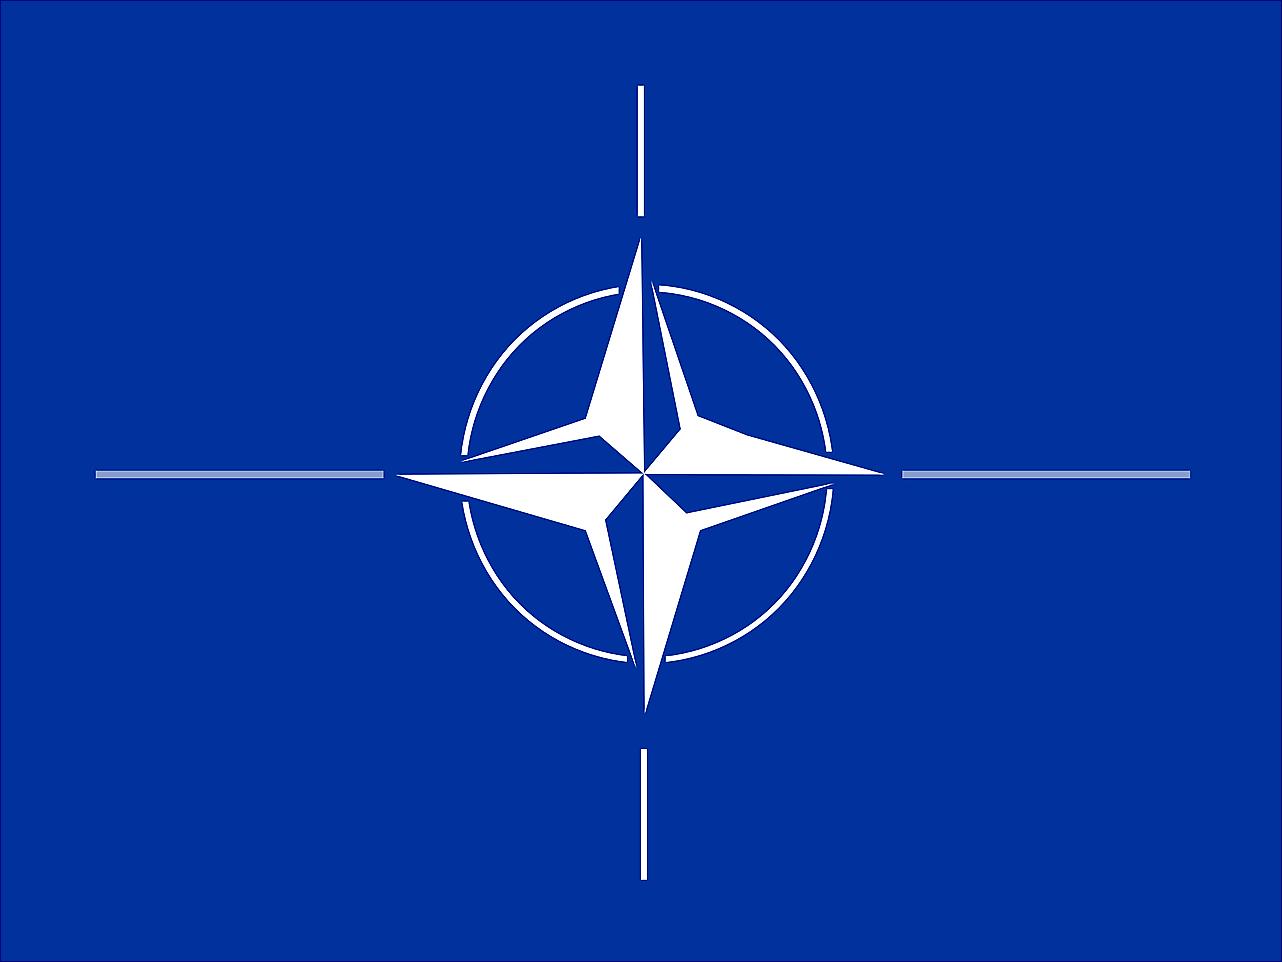   NATO nemá plán, jak zvítězit nad Ruskem